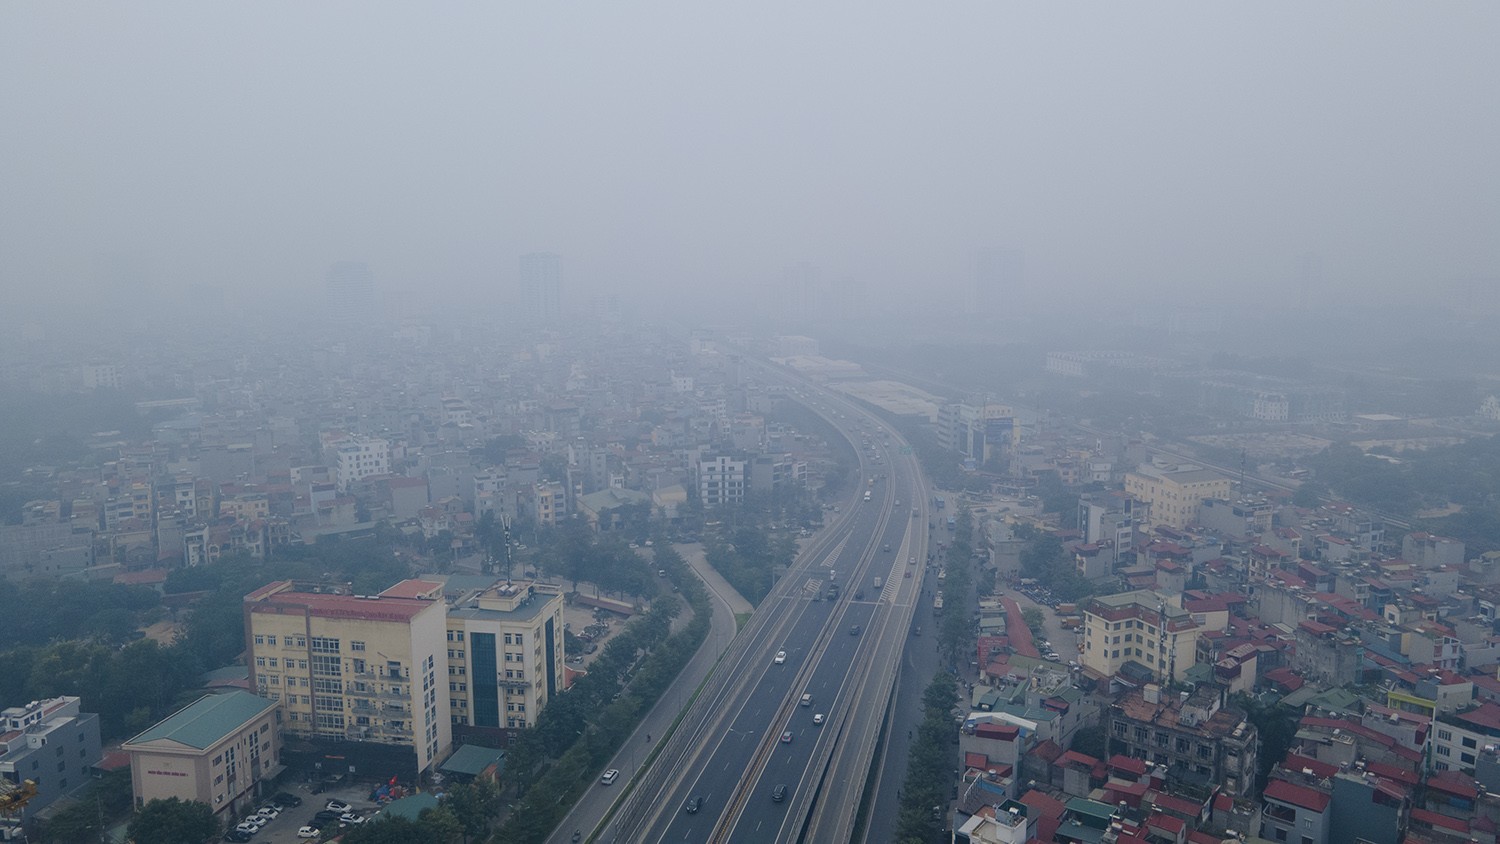 Trung tâm Hà Nội chìm trong sương mù dày đặc, chất lượng không khí nhiều nơi ở “mức đỏ” - 9